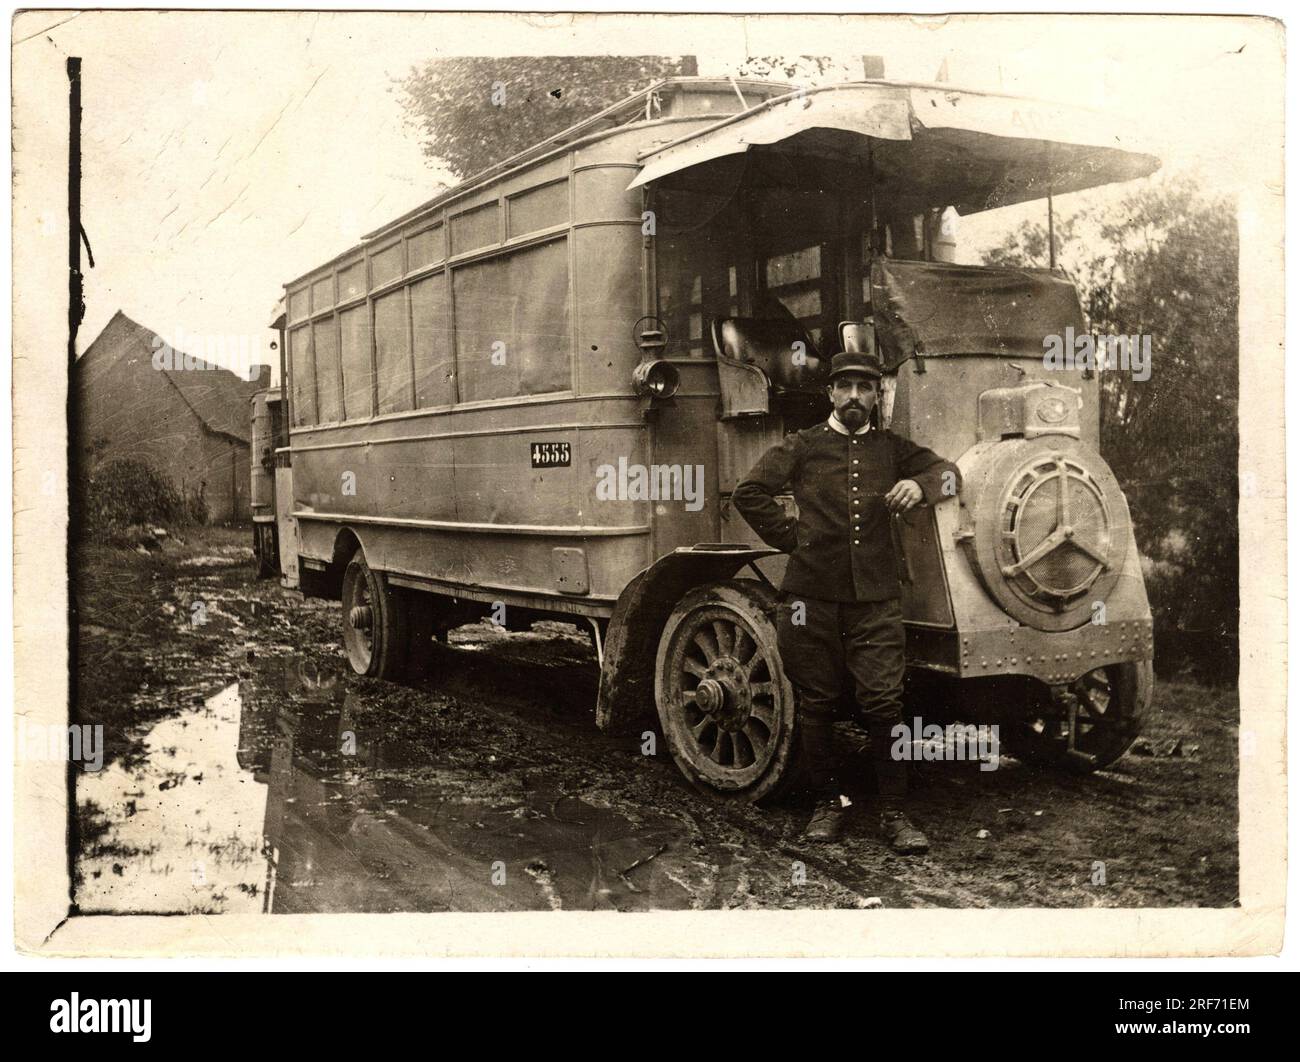 Un autobus requisitionne, lors de la premiere guerre mondiale ( 1914-1918) avec son chauffeur. Carte postale debut XXeme siecle. Stock Photo